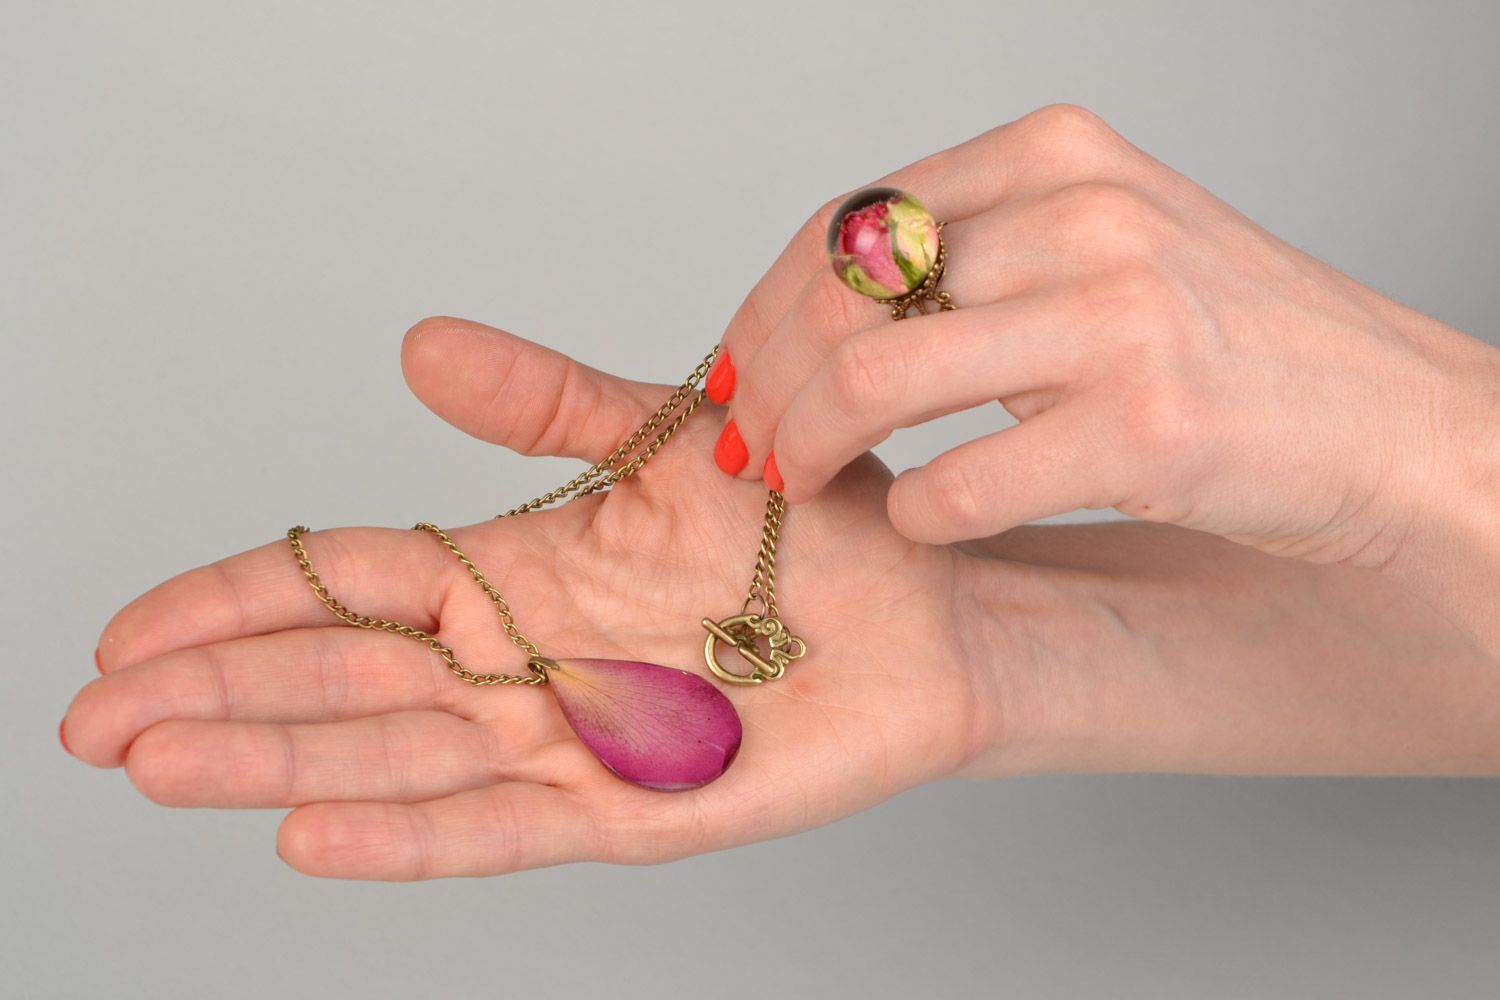 Кольцо и кулон с живыми цветами внутри под эпоксидной смолой набор украшений ручной работы фото 2